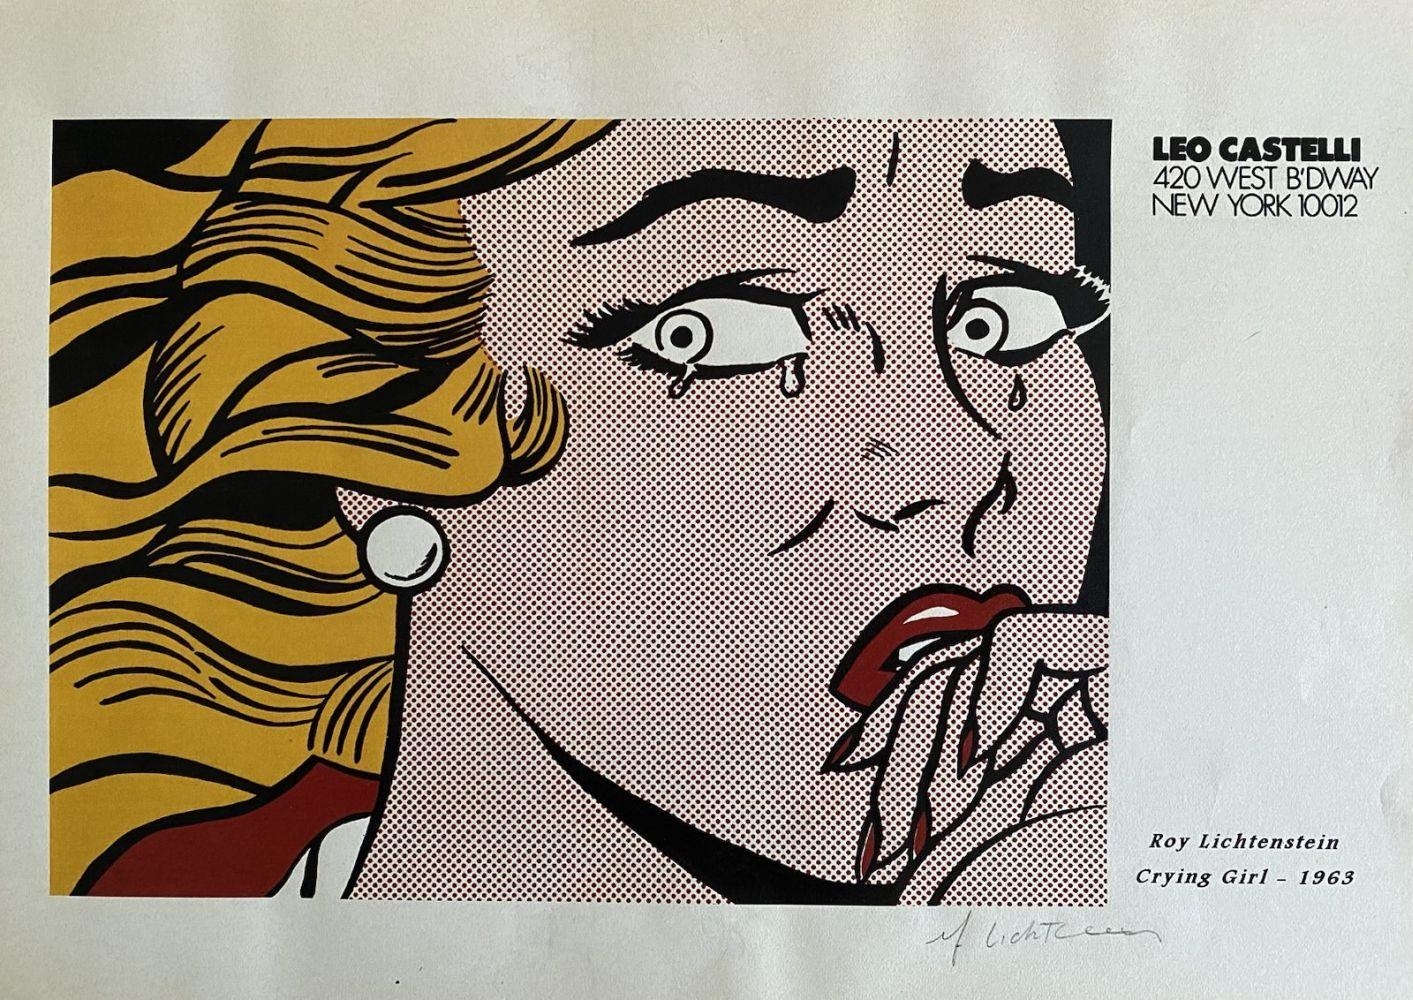 Roy Lichtenstein, Girl with Hair Ribbon (1965)